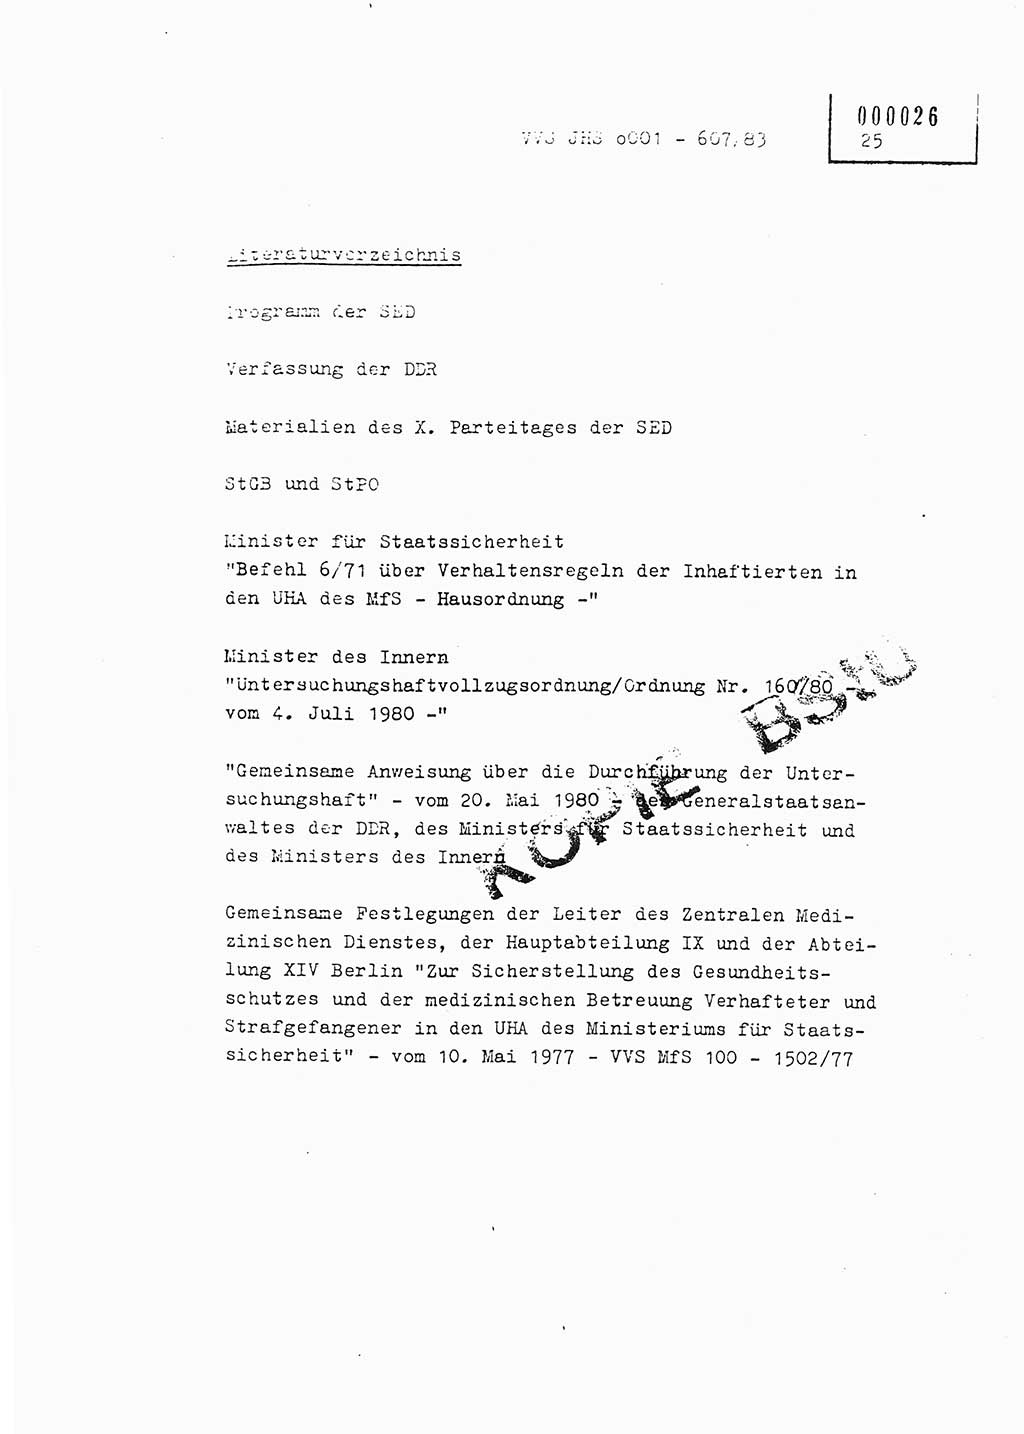 Fachschulabschlußarbeit Oberleutnant Hans-Joachim Saltmann (BV Rostock Abt. ⅩⅣ), Ministerium für Staatssicherheit (MfS) [Deutsche Demokratische Republik (DDR)], Juristische Hochschule (JHS), Vertrauliche Verschlußsache (VVS) o001-607/83, Potsdam 1983, Seite 25 (FS-Abschl.-Arb. MfS DDR JHS VVS o001-607/83 1983, S. 25)